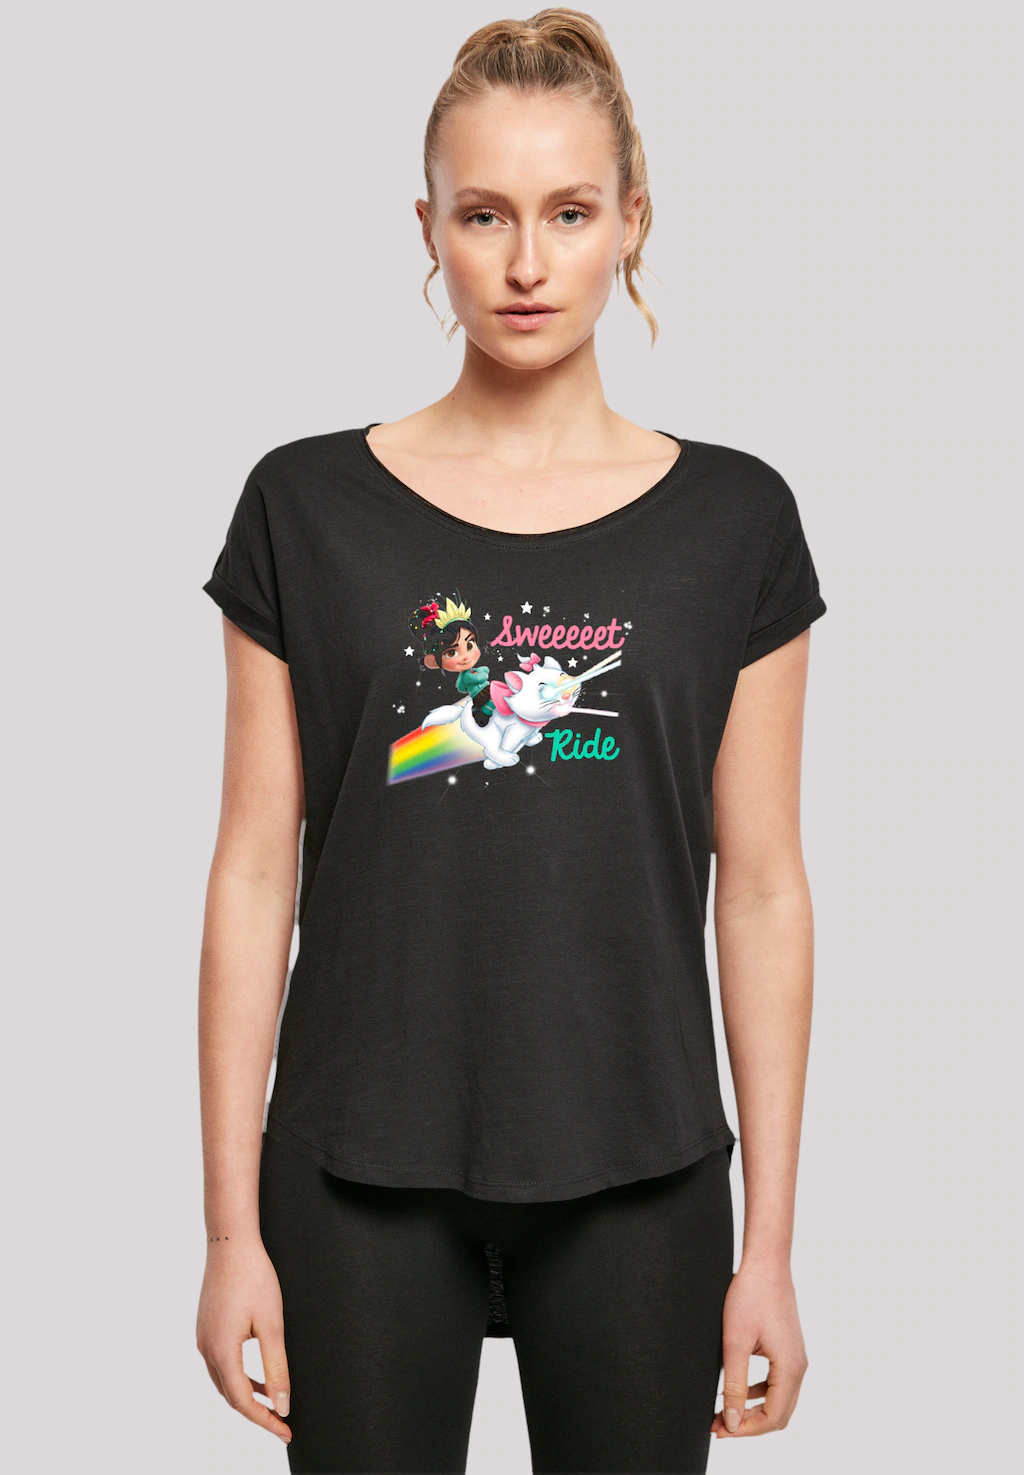 F4NT4STIC T-Shirt "Disney Wreck-It Ralph Reichts Sweet Ride", Premium Quali günstig online kaufen